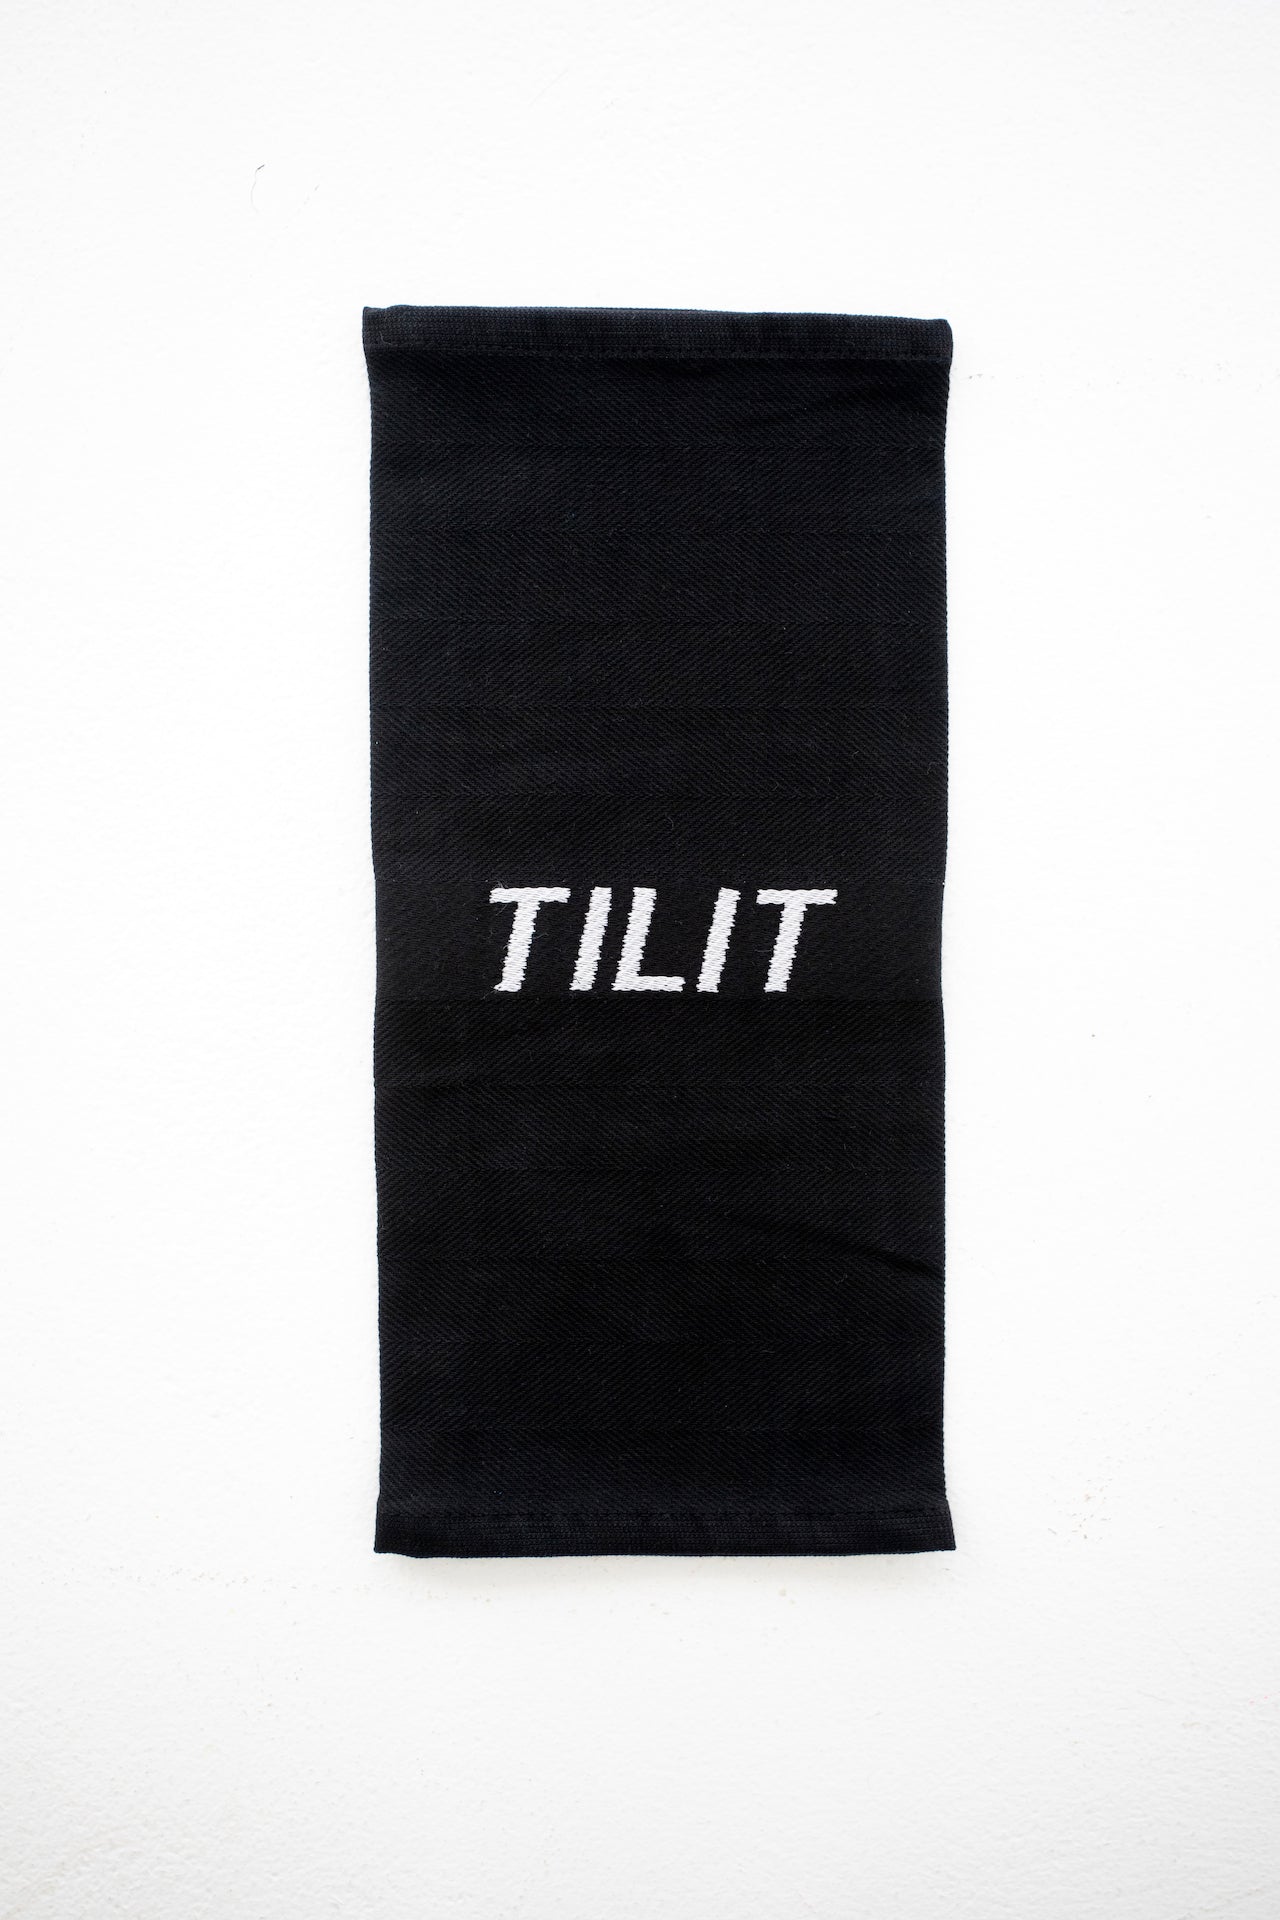 tilit towel closeup